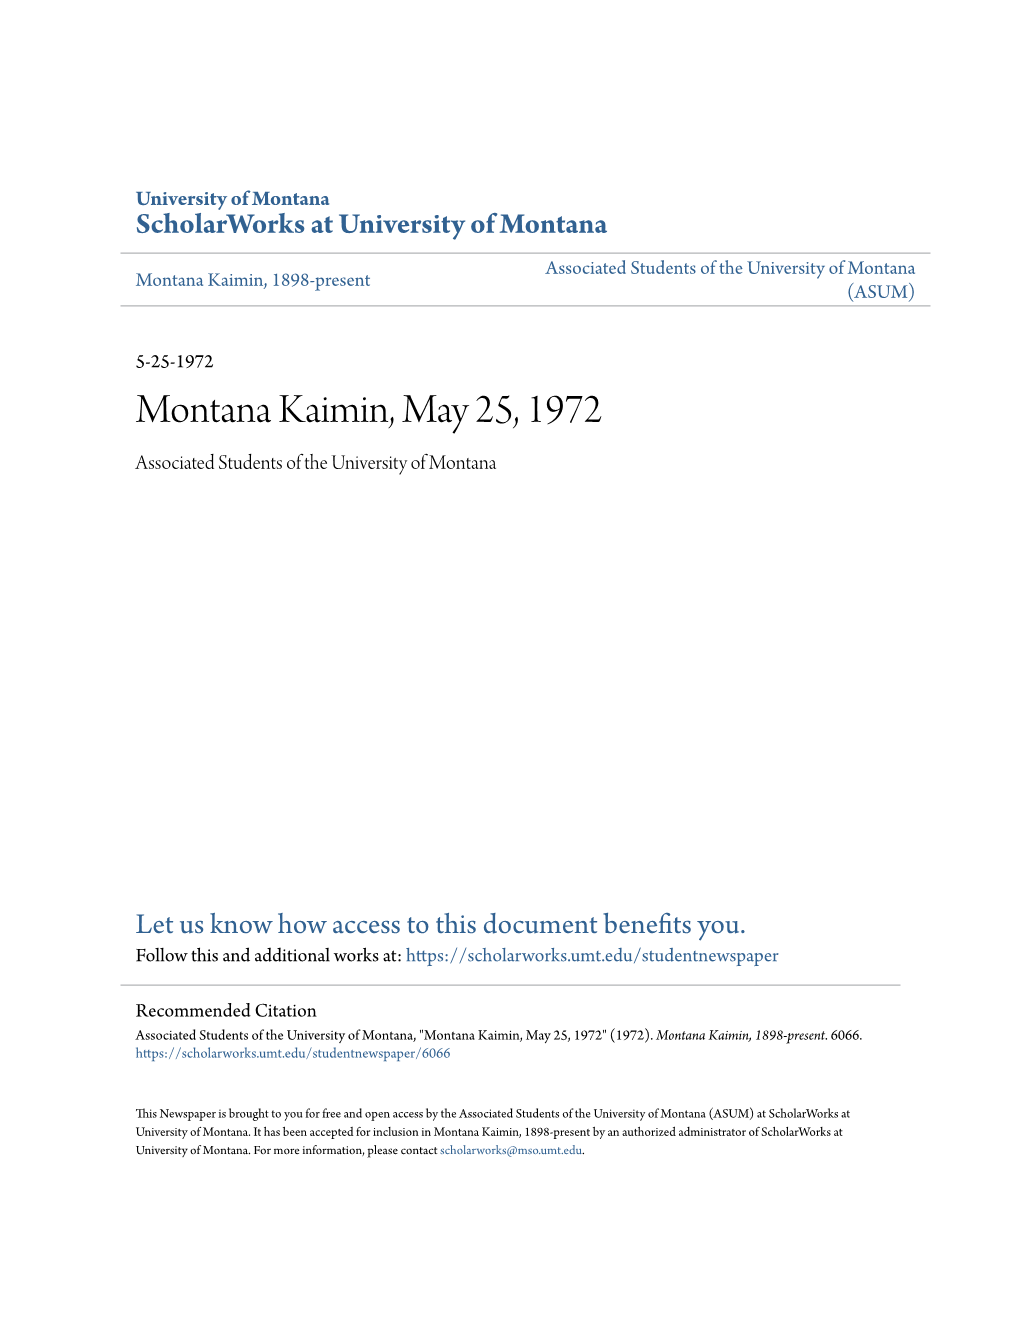 Montana Kaimin, May 25, 1972 Associated Students of the University of Montana